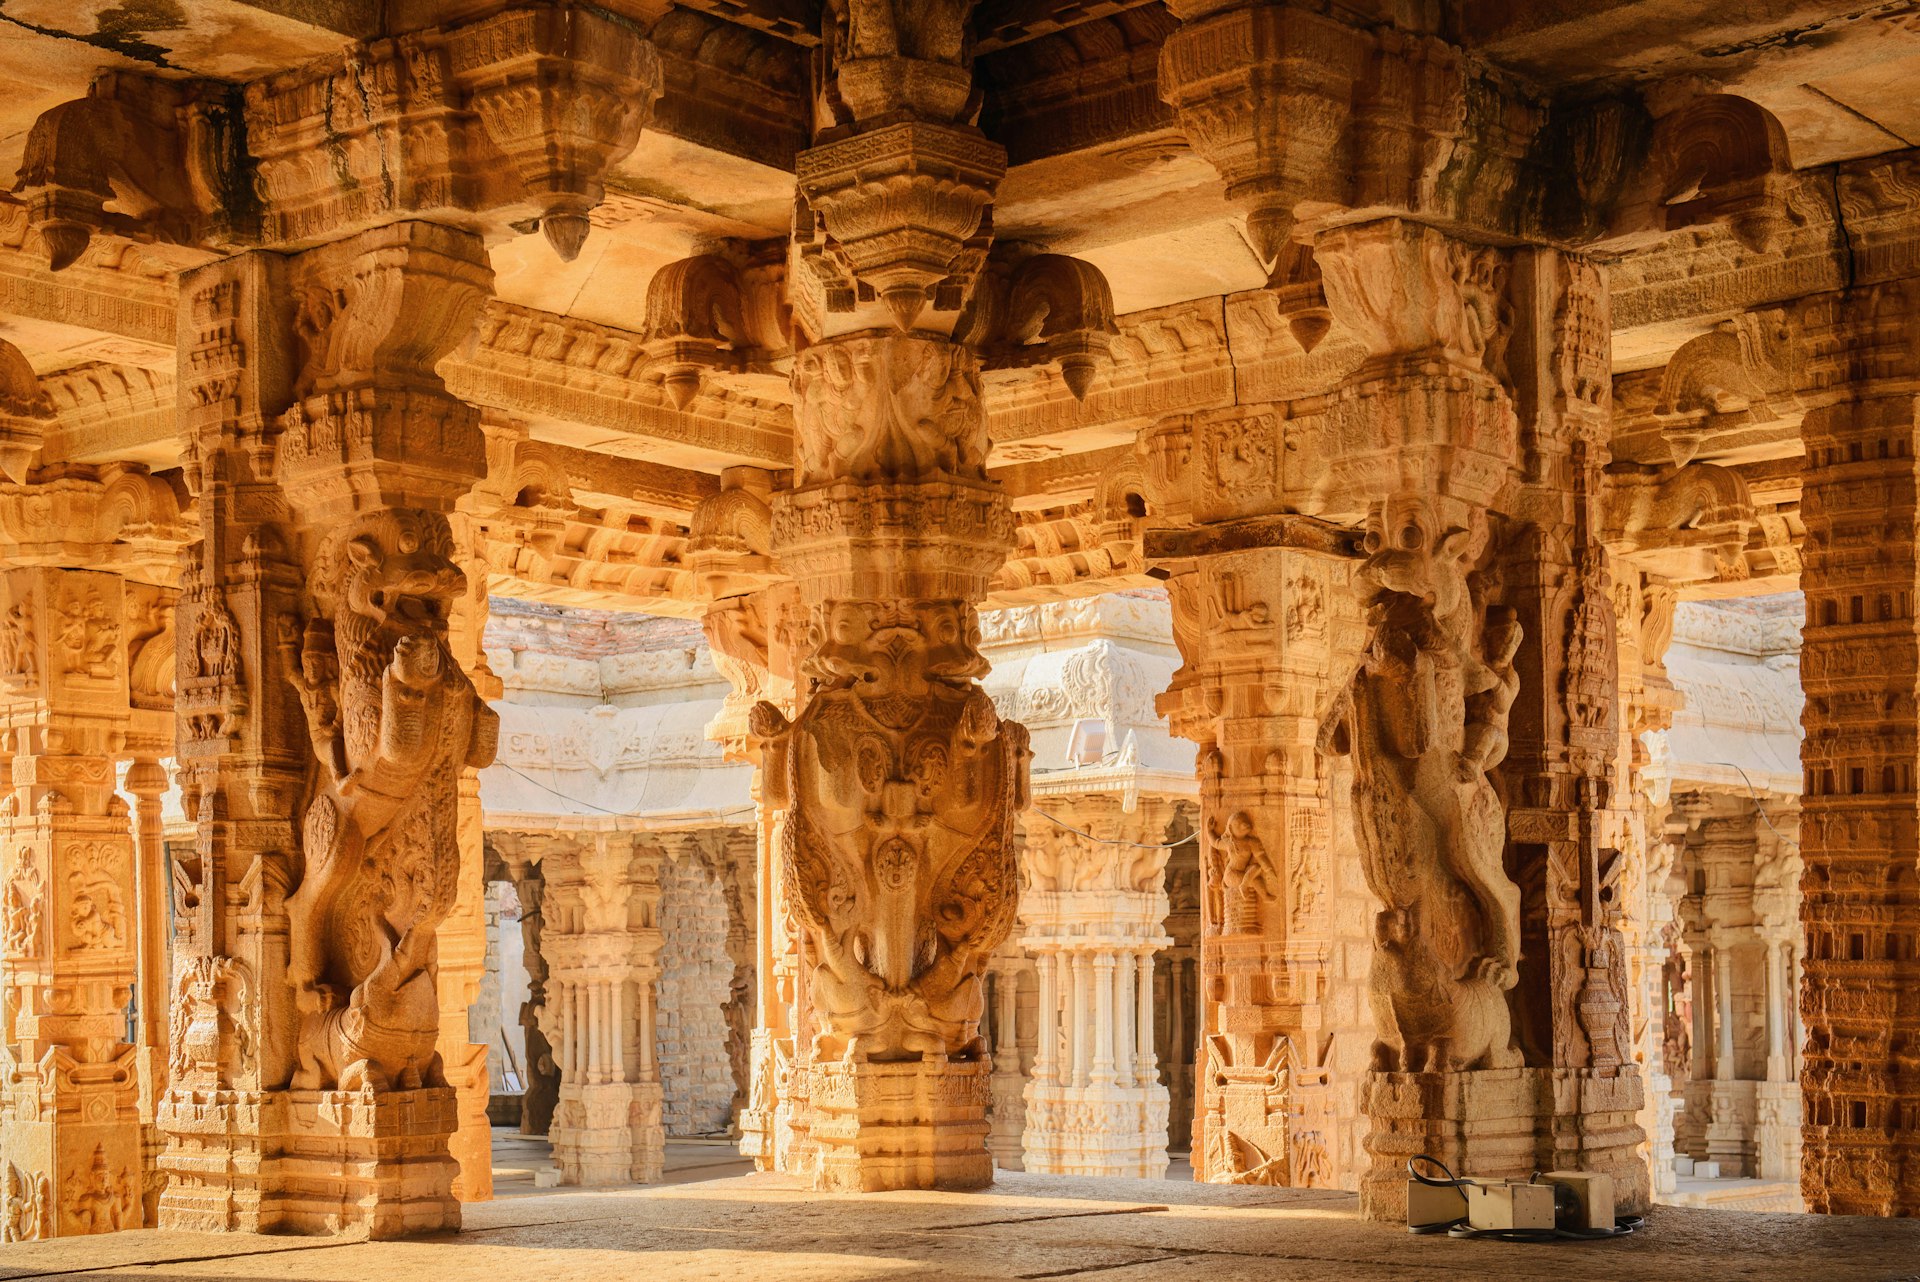 Beautiful columns at the ruins of the Vittala Temple in Hampi, Karnataka, India